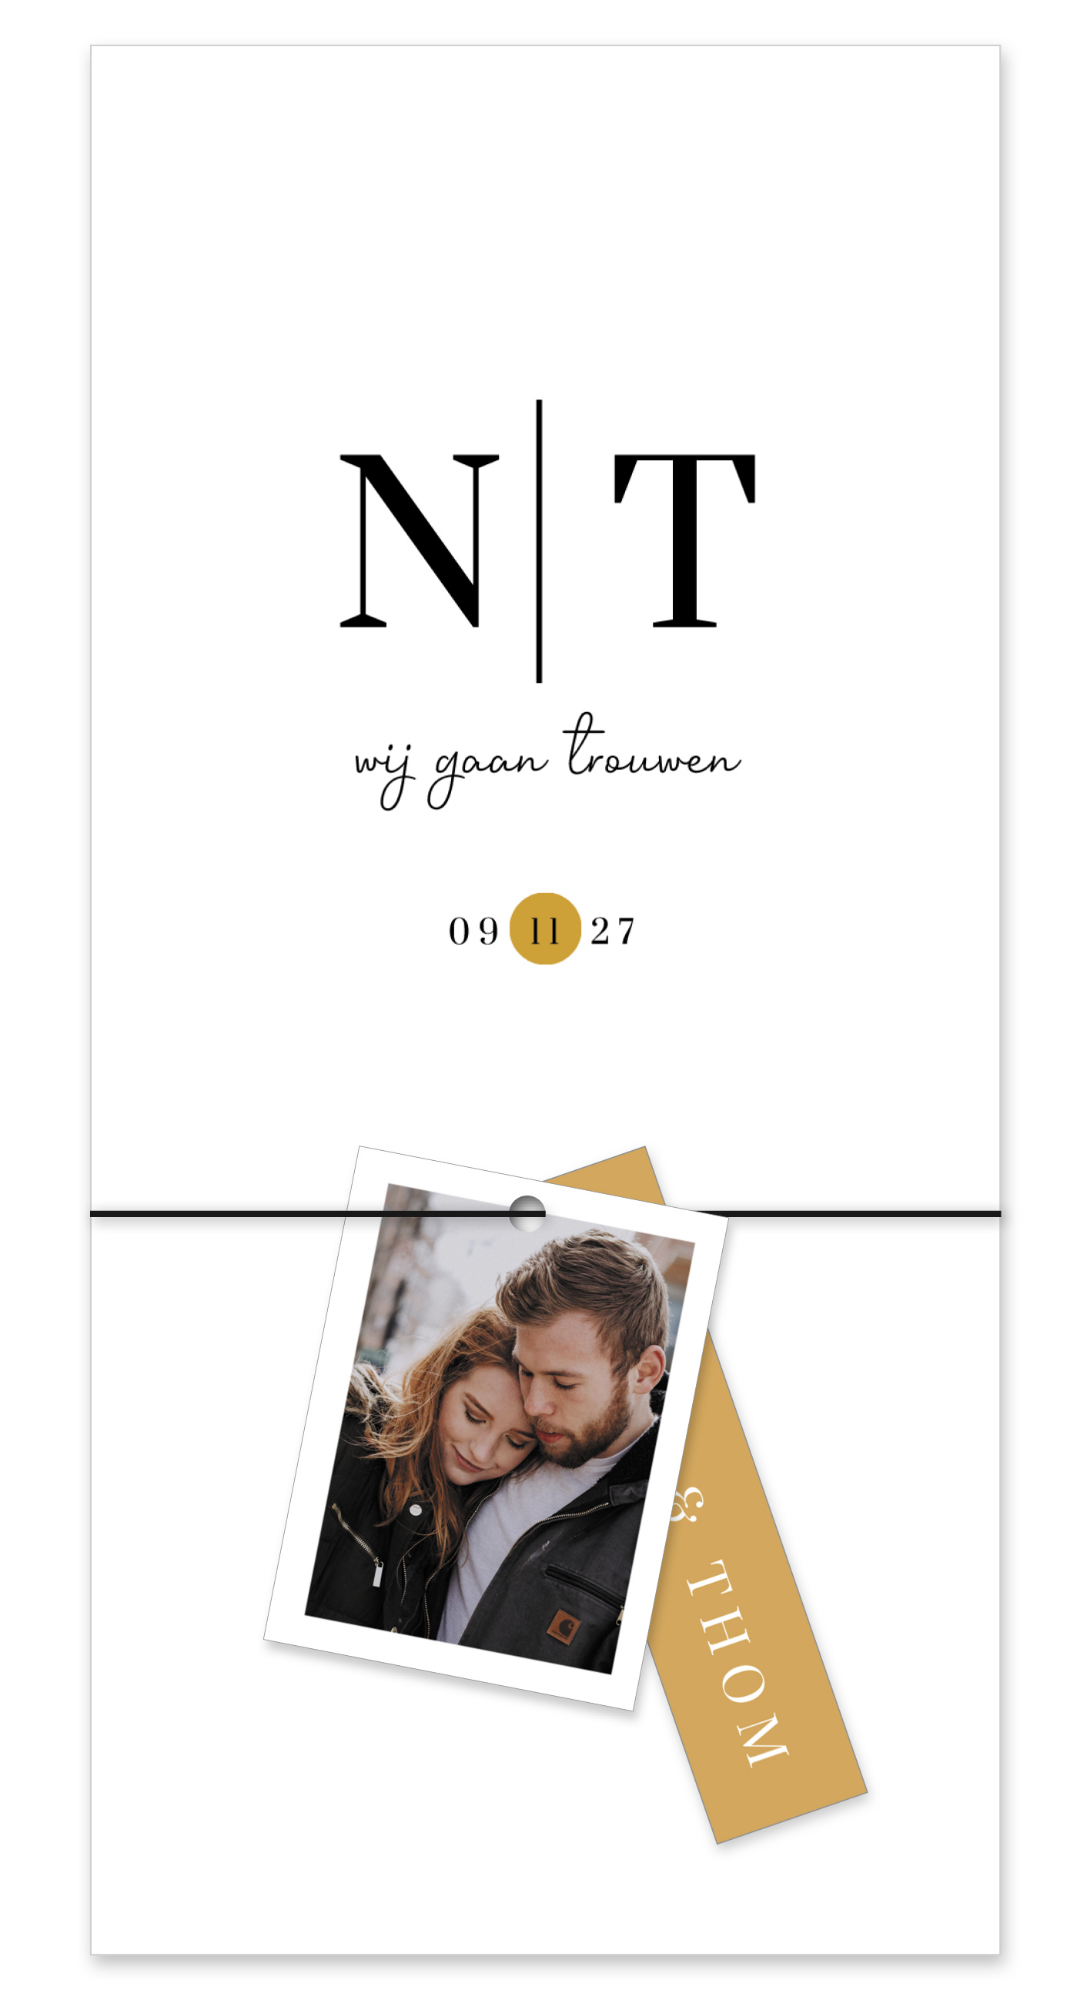 Witte trouwkaart met initialen en labels met foto en trouwdatum